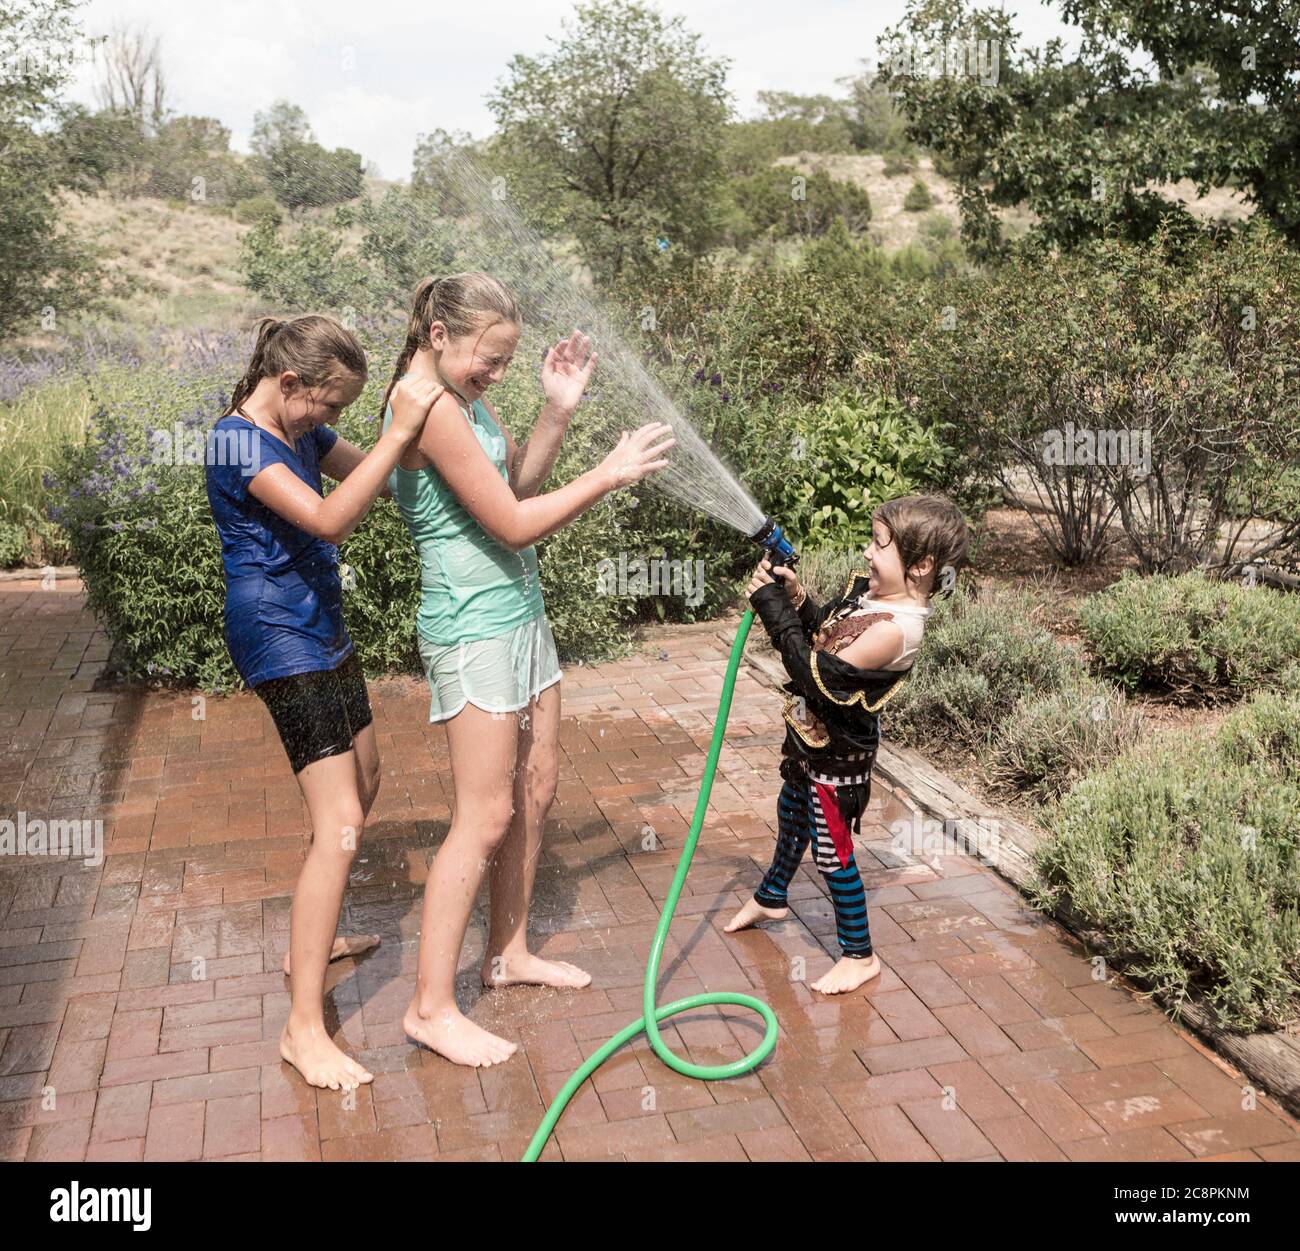 Kinder sprühen sich gegenseitig mit Wasserschlauch Stockfoto